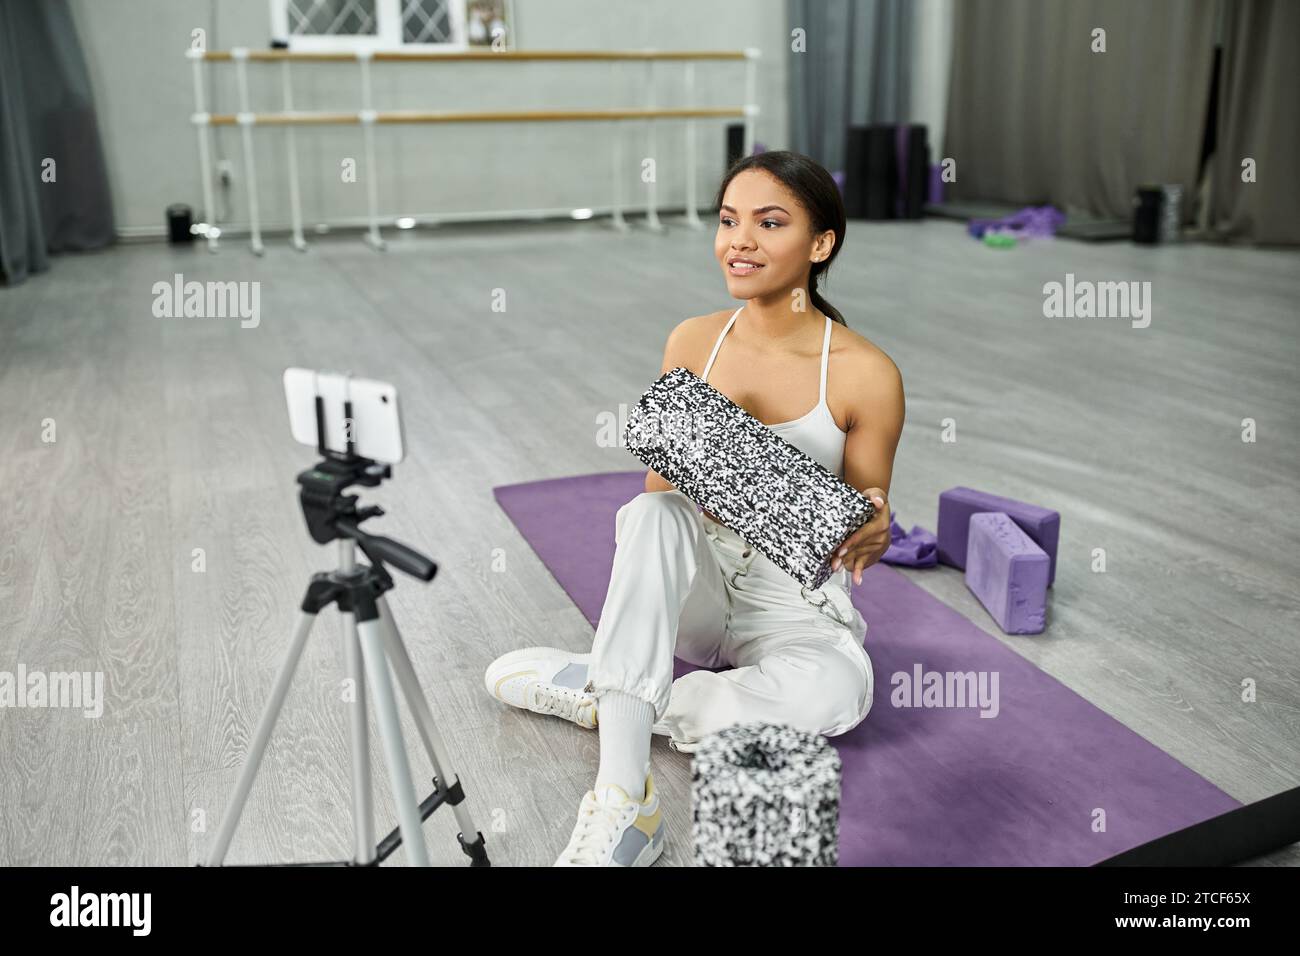 abile ballerina afroamericana su un tappeto fitness che mostra attrezzature sportive durante il video blog in studio Foto Stock